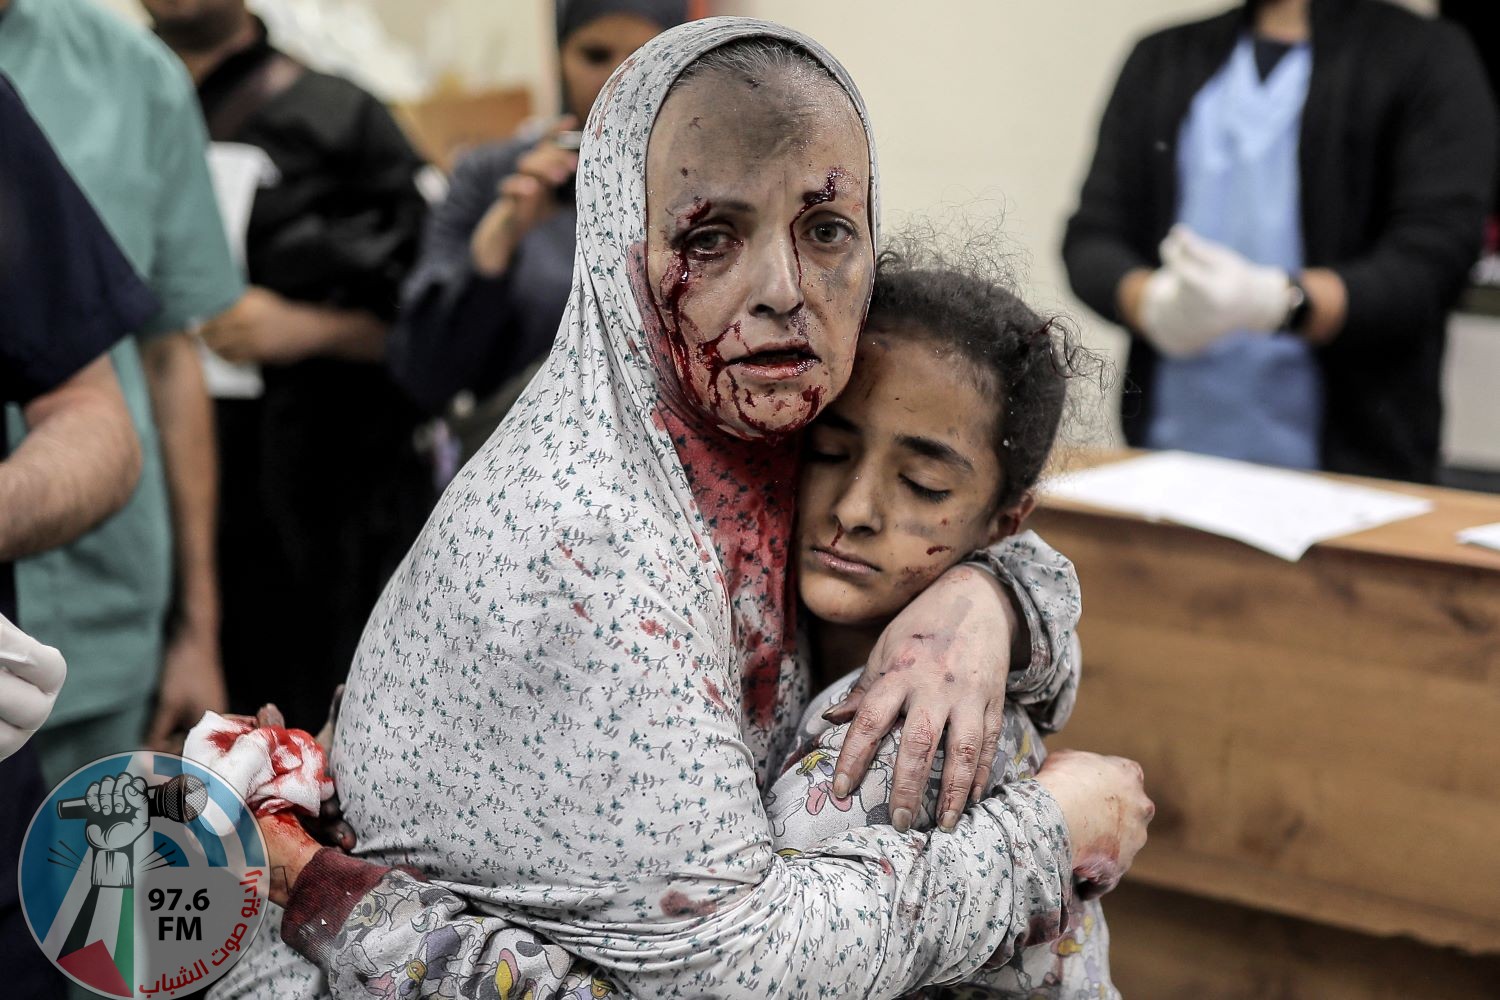 ارتفاع حصيلة الشهداء في غزة إلى 32916 والإصابات إلى 75494 منذ بدء العدوان